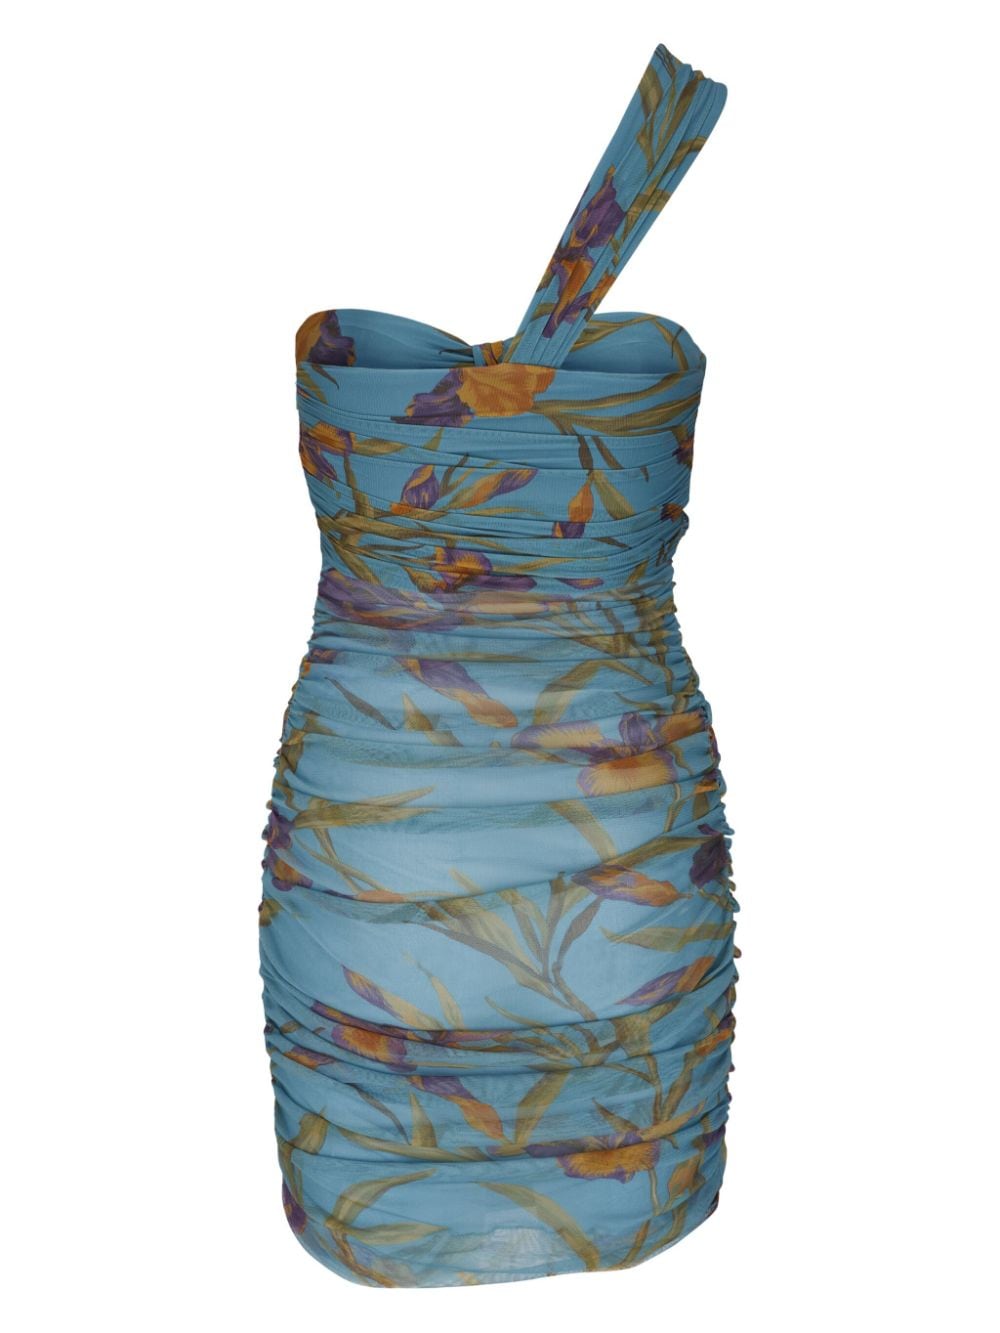 Saint Laurent Asymmetrische jurk - Blauw